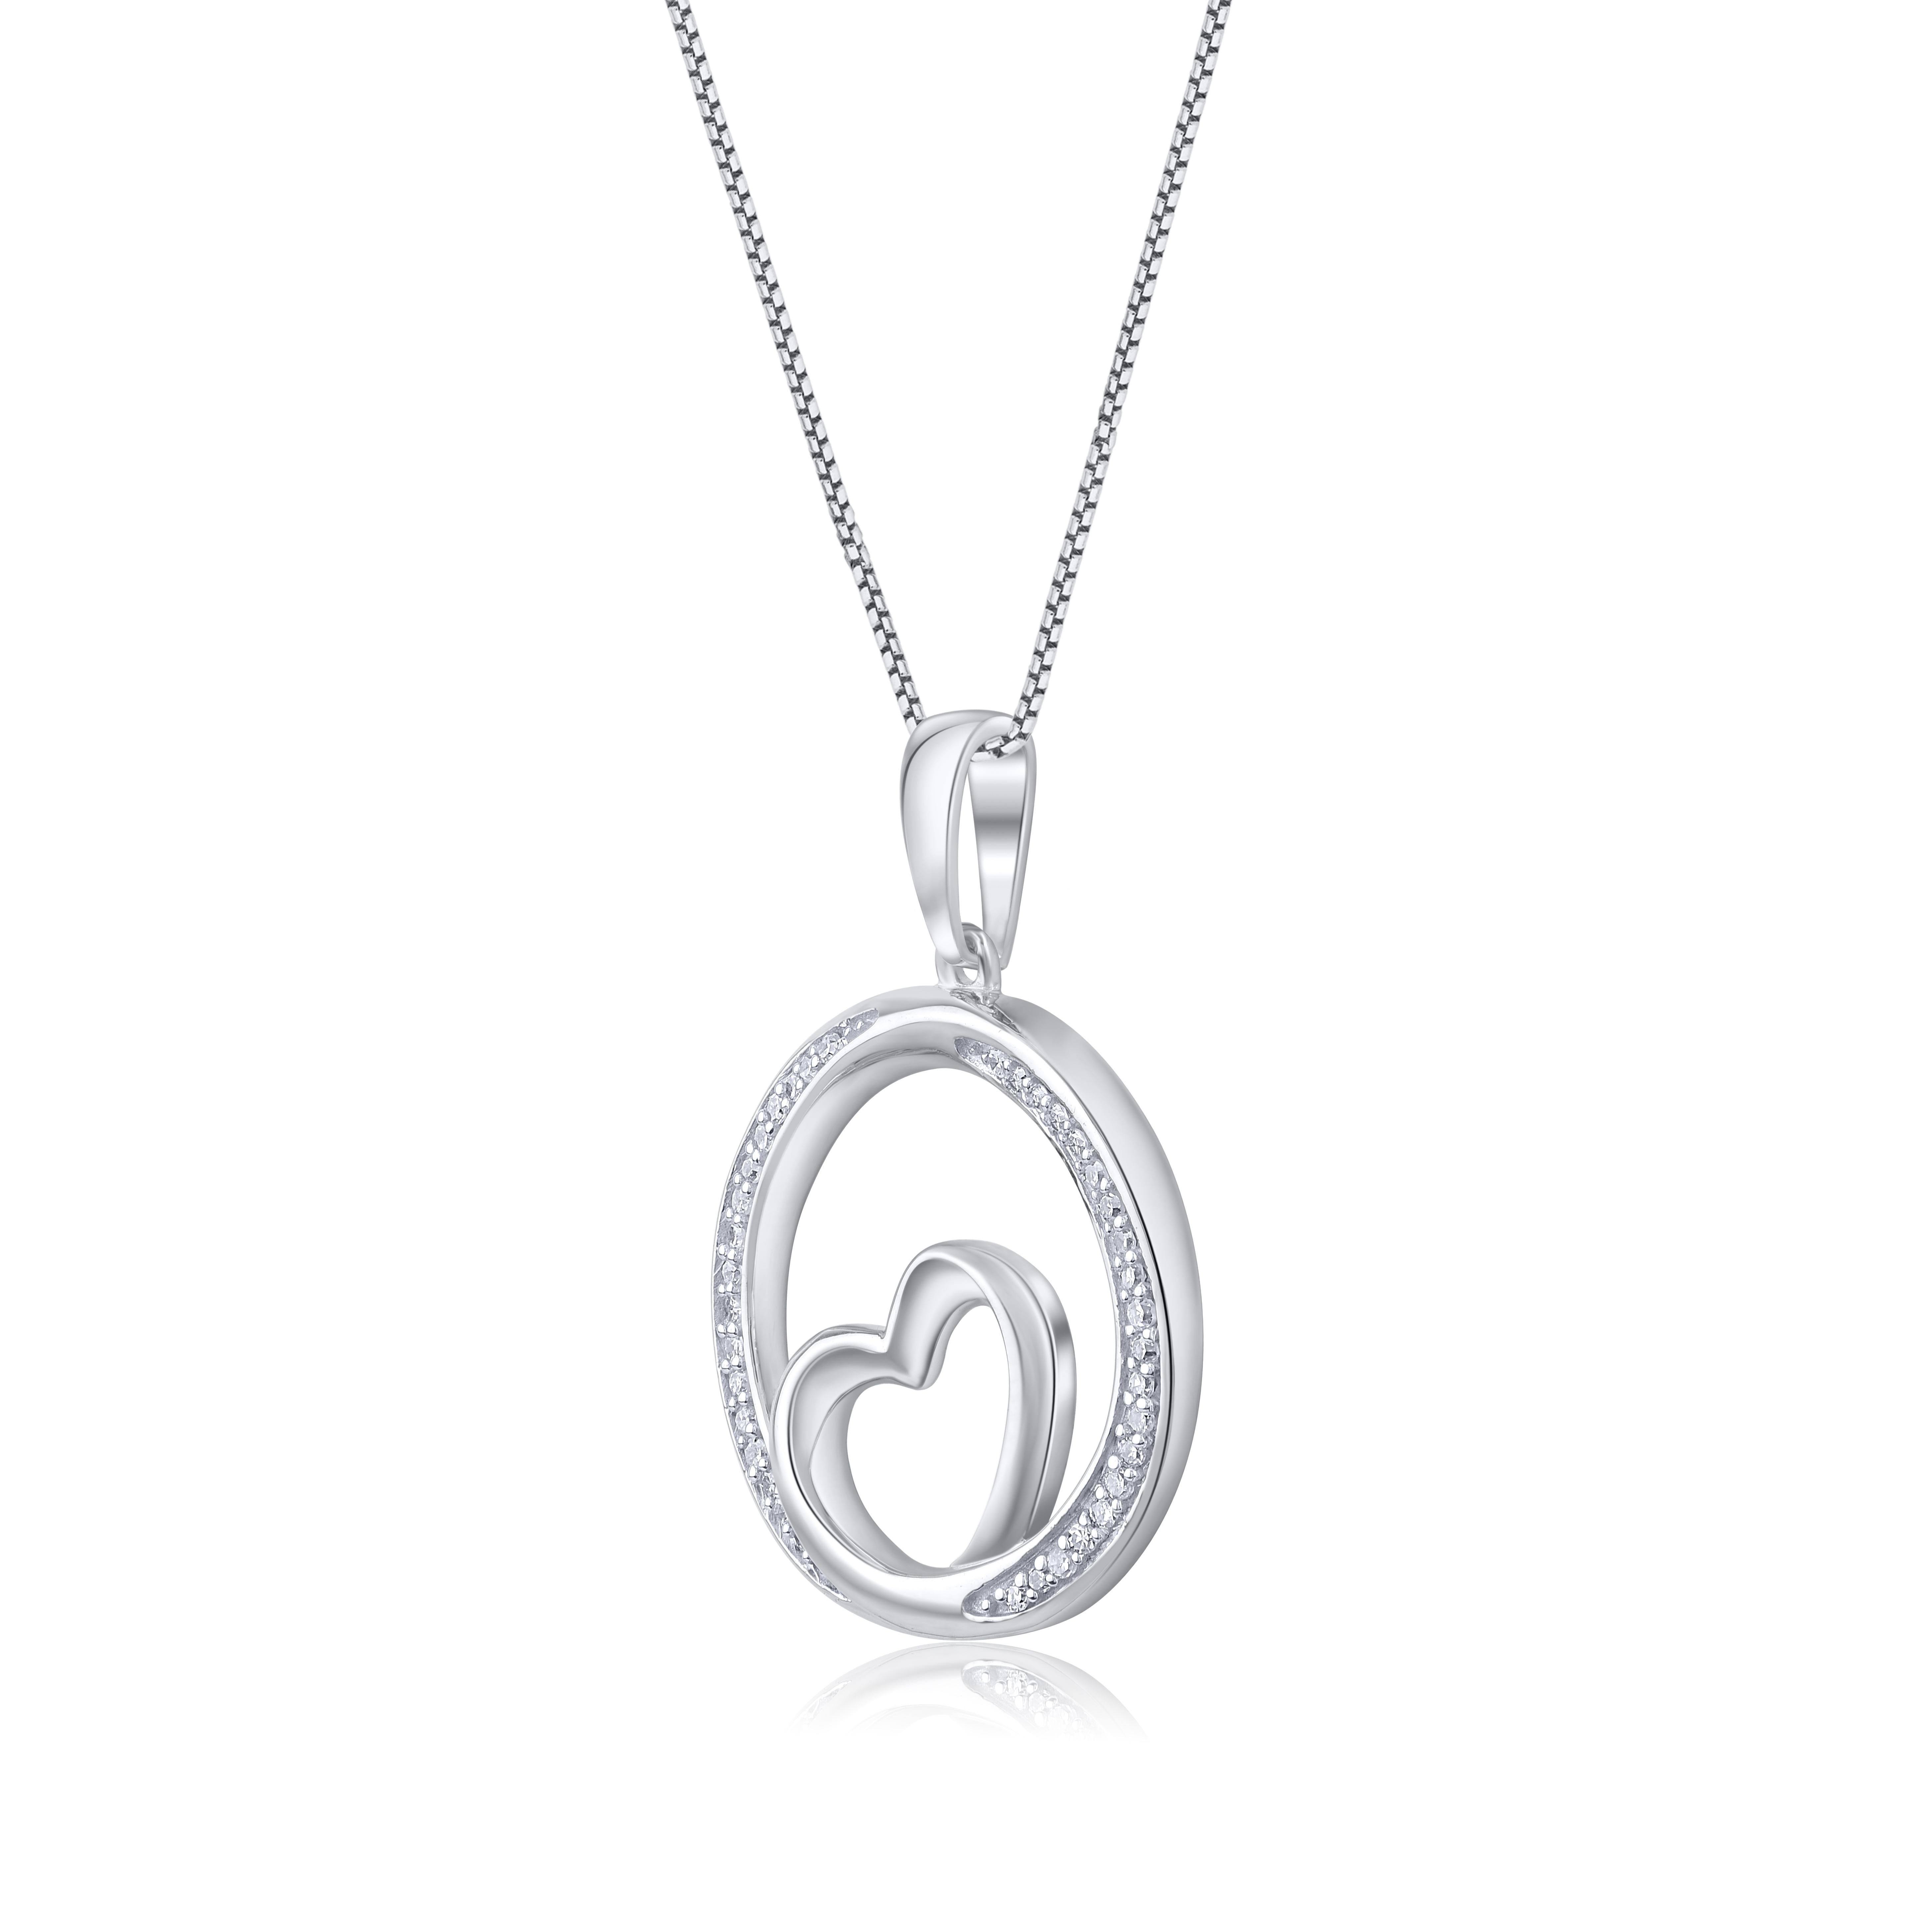 Montrez votre amour avec ce pendentif en diamant en forme de cœur. Ce magnifique collier pendentif est orné de 38 diamants ronds de taille unique en sertissage pave. Le poids total des diamants de ce pendentif est de 0,10 carats. Tous les diamants